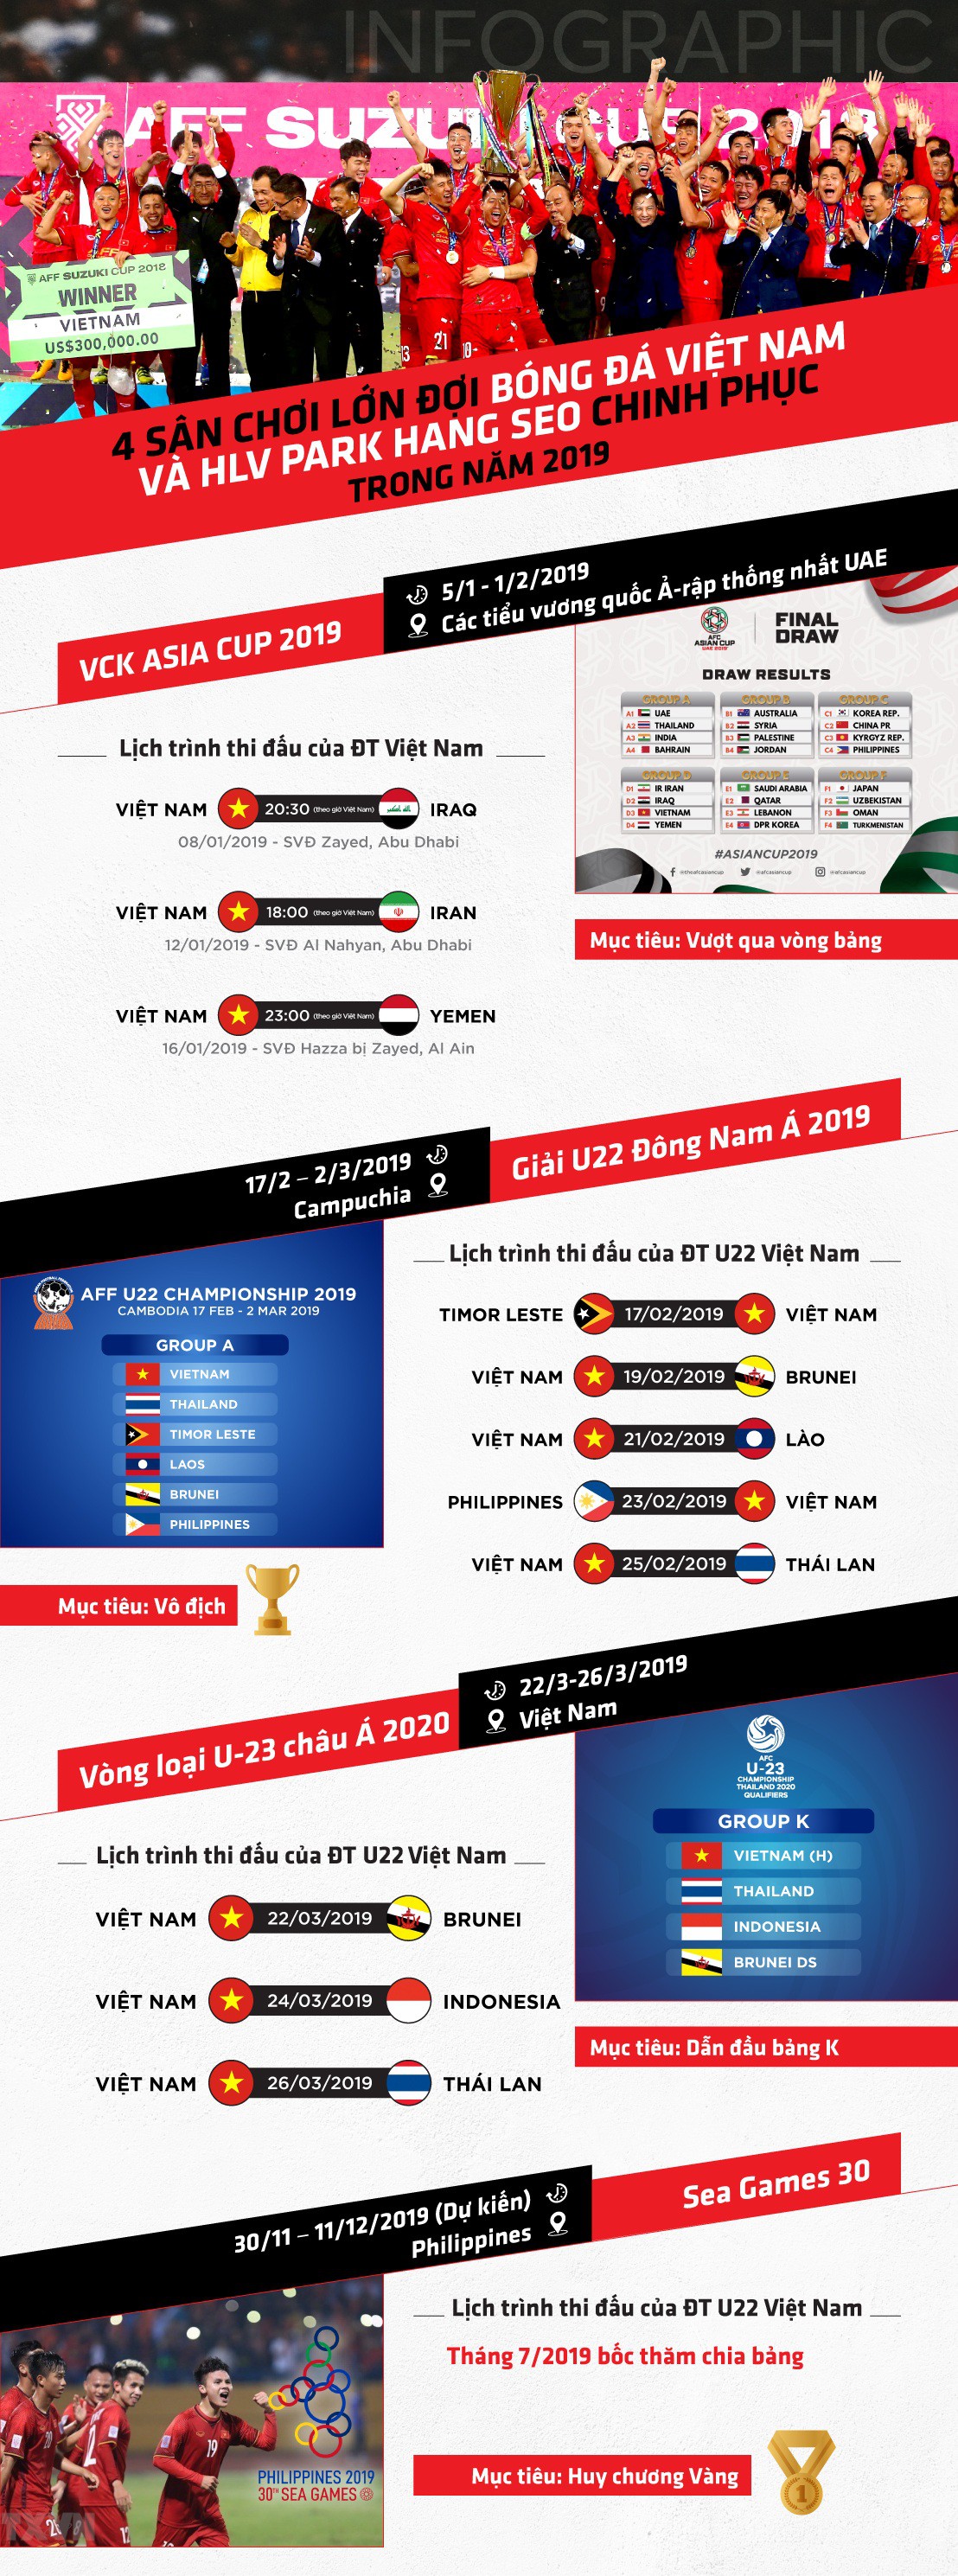 Infographic: 4 sân chơi lớn đợi bóng đá Việt Nam và HLV Park Hang Seo chinh phục trong năm 2019 - Ảnh 1.